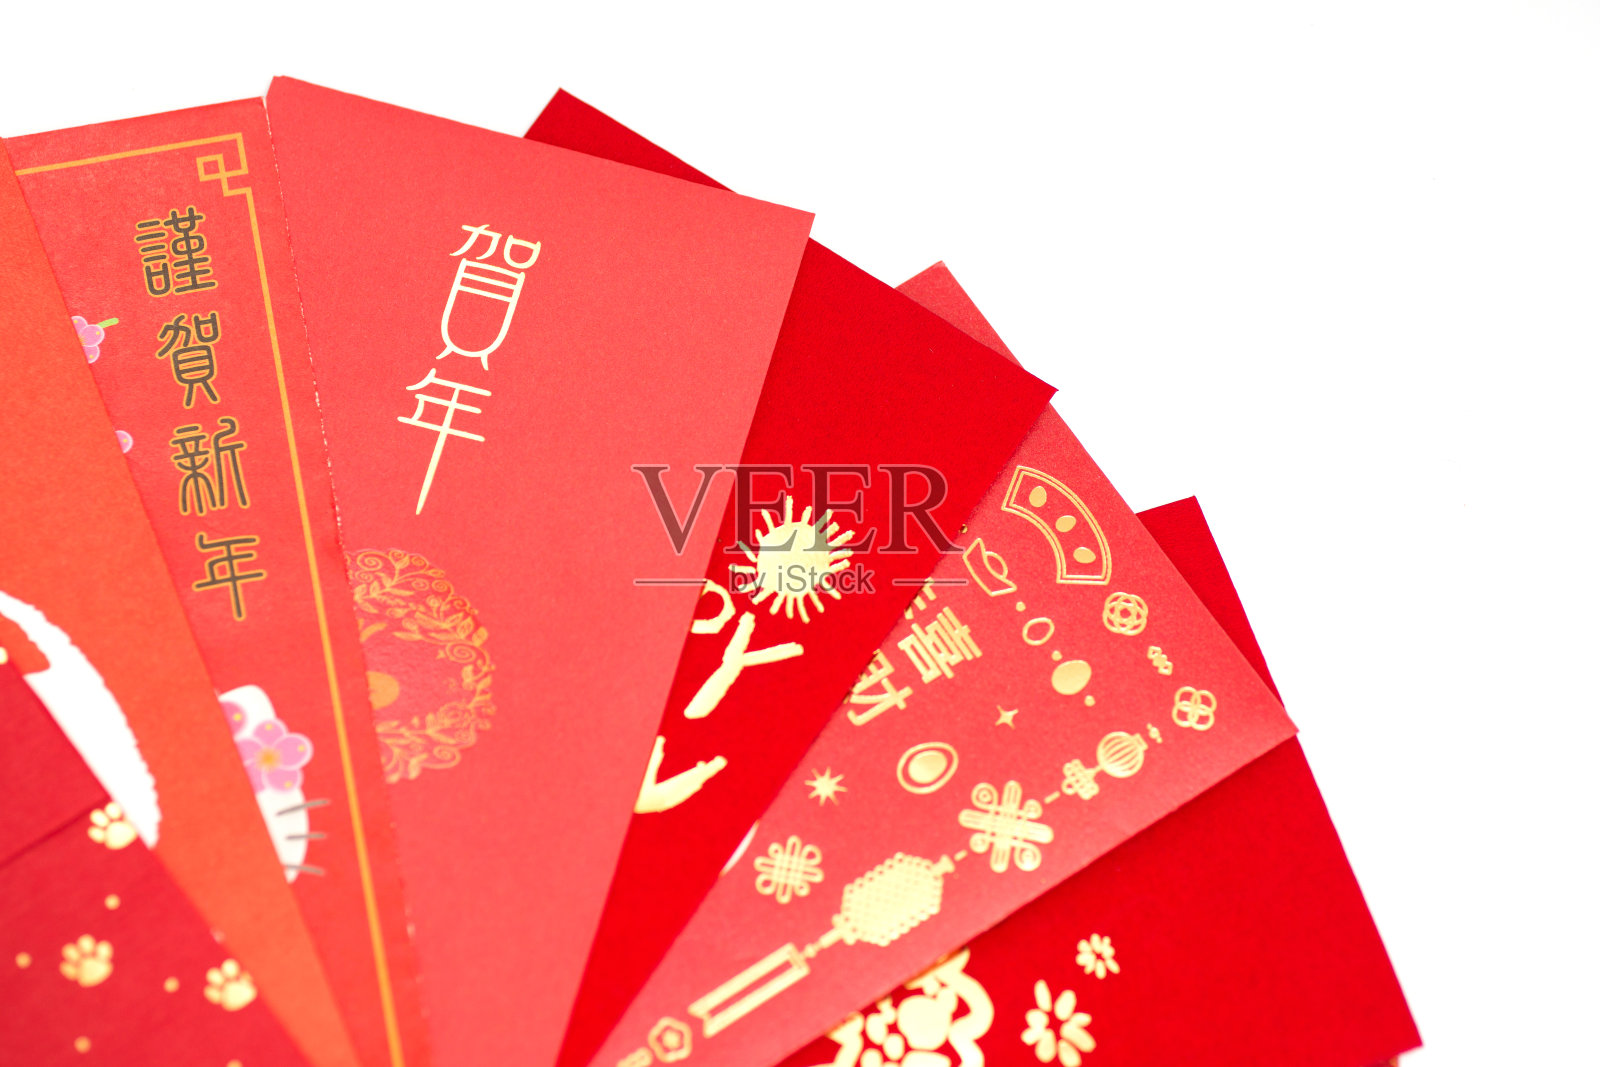 春节的红包，白色背景上写着“新年好”的红包照片摄影图片